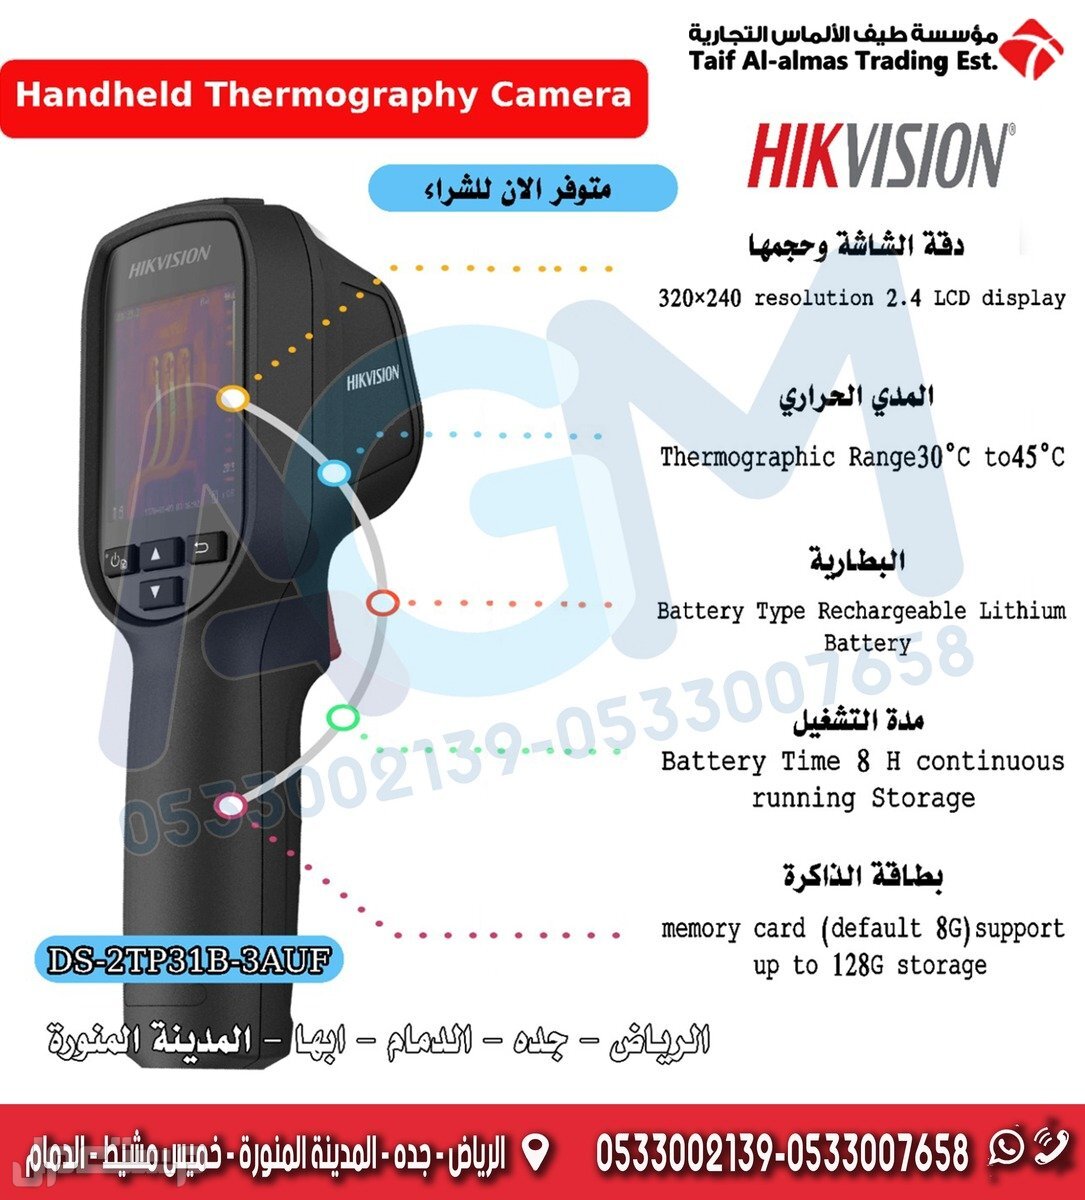 كاميرا قياس درجة حرارة الجسم الحرارية Hikvision Thermographic Handheld